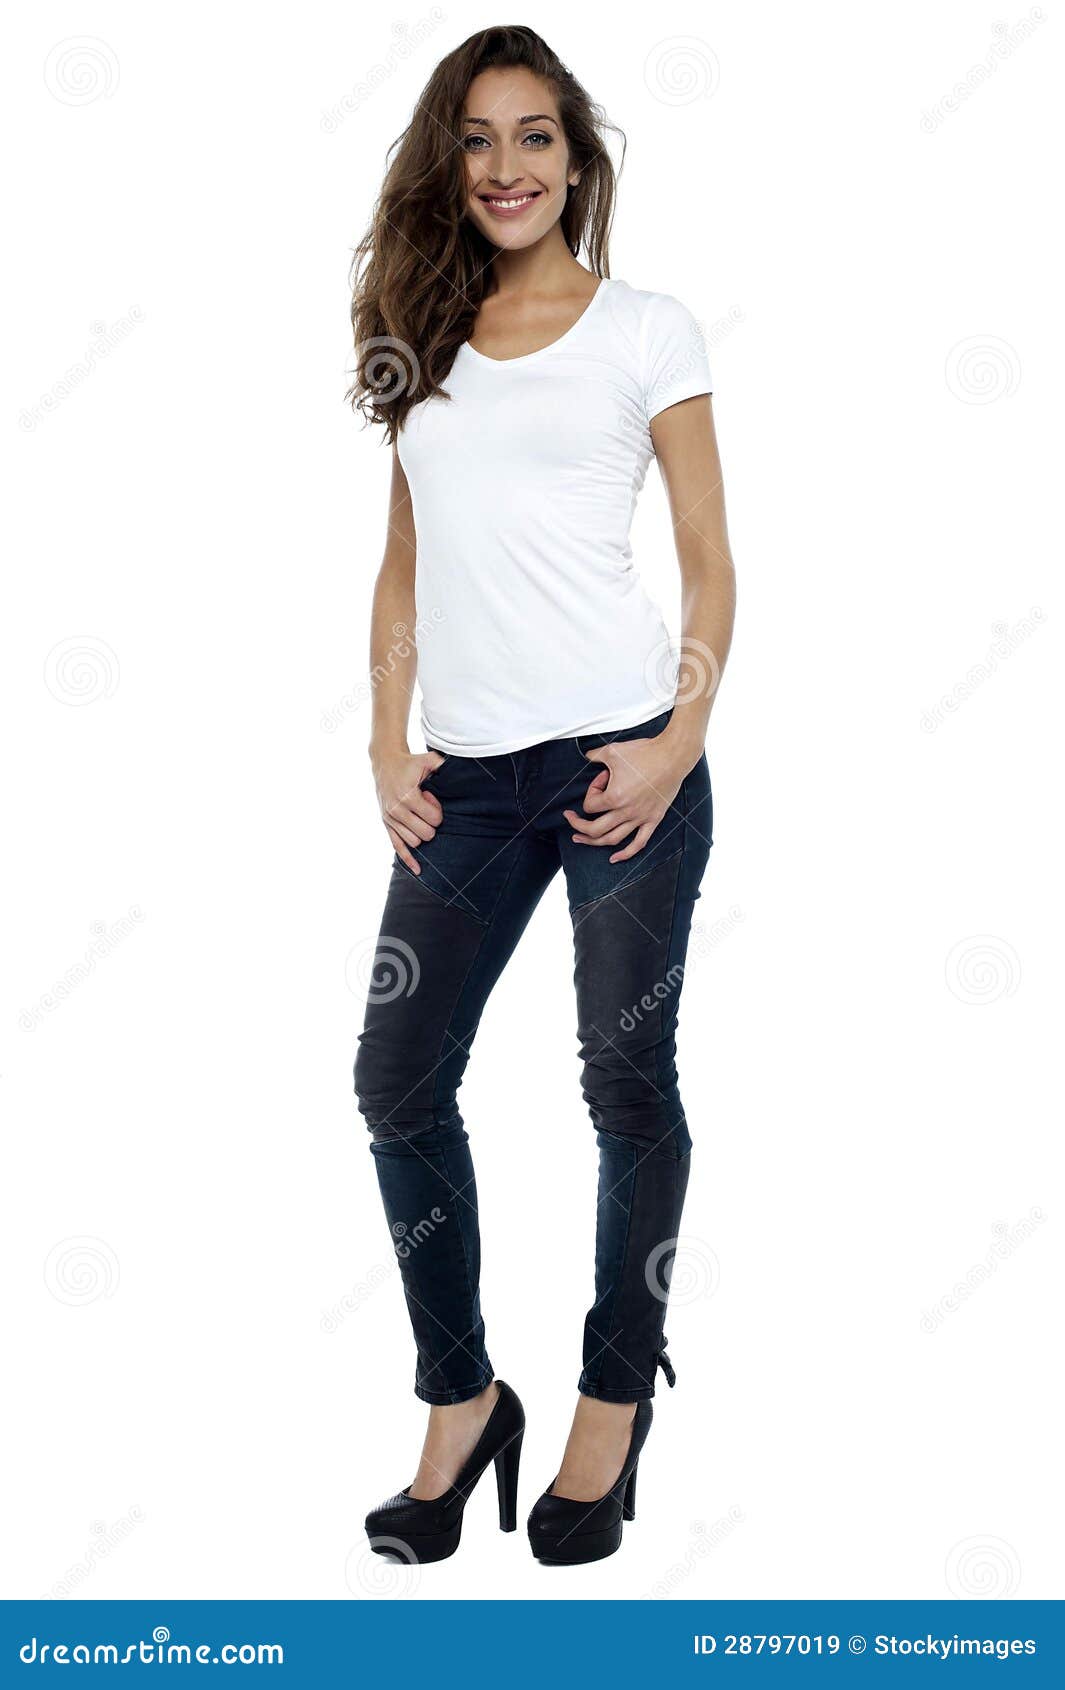 Stylish Model Wearing Stilettos and Striking a Pose Stock Image - Image ...